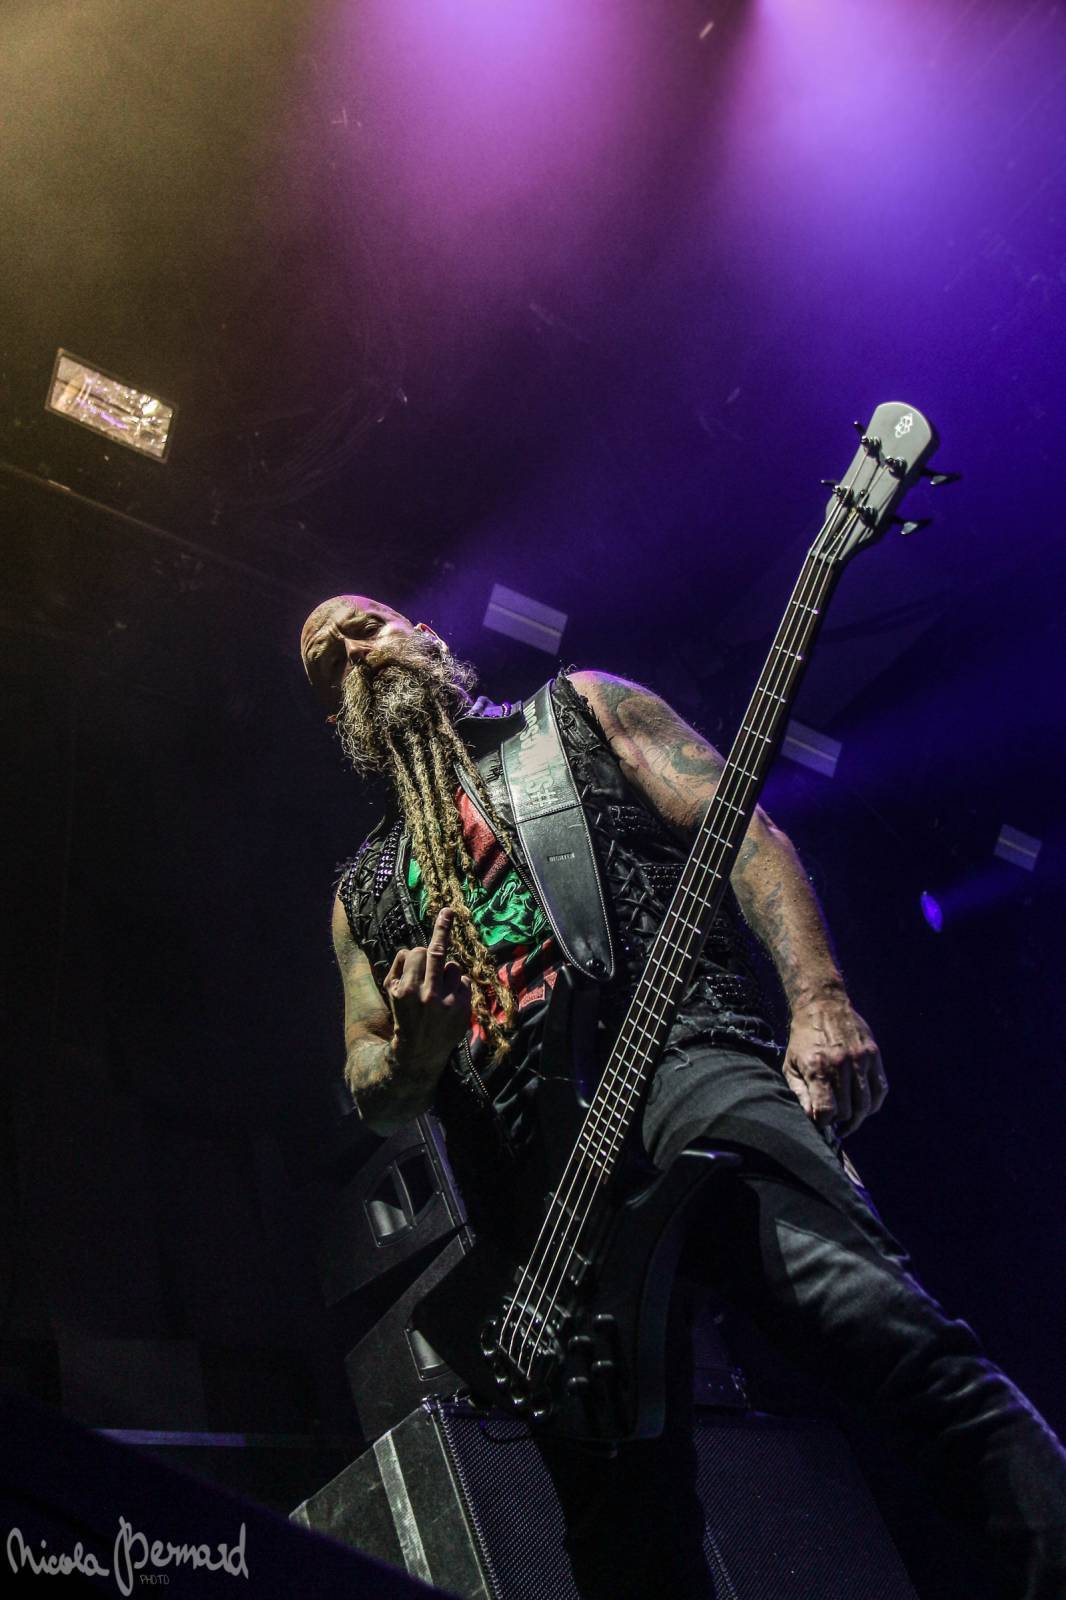 LIVE: Five Finger Death Punch v Praze fanoušky strhli svou energií